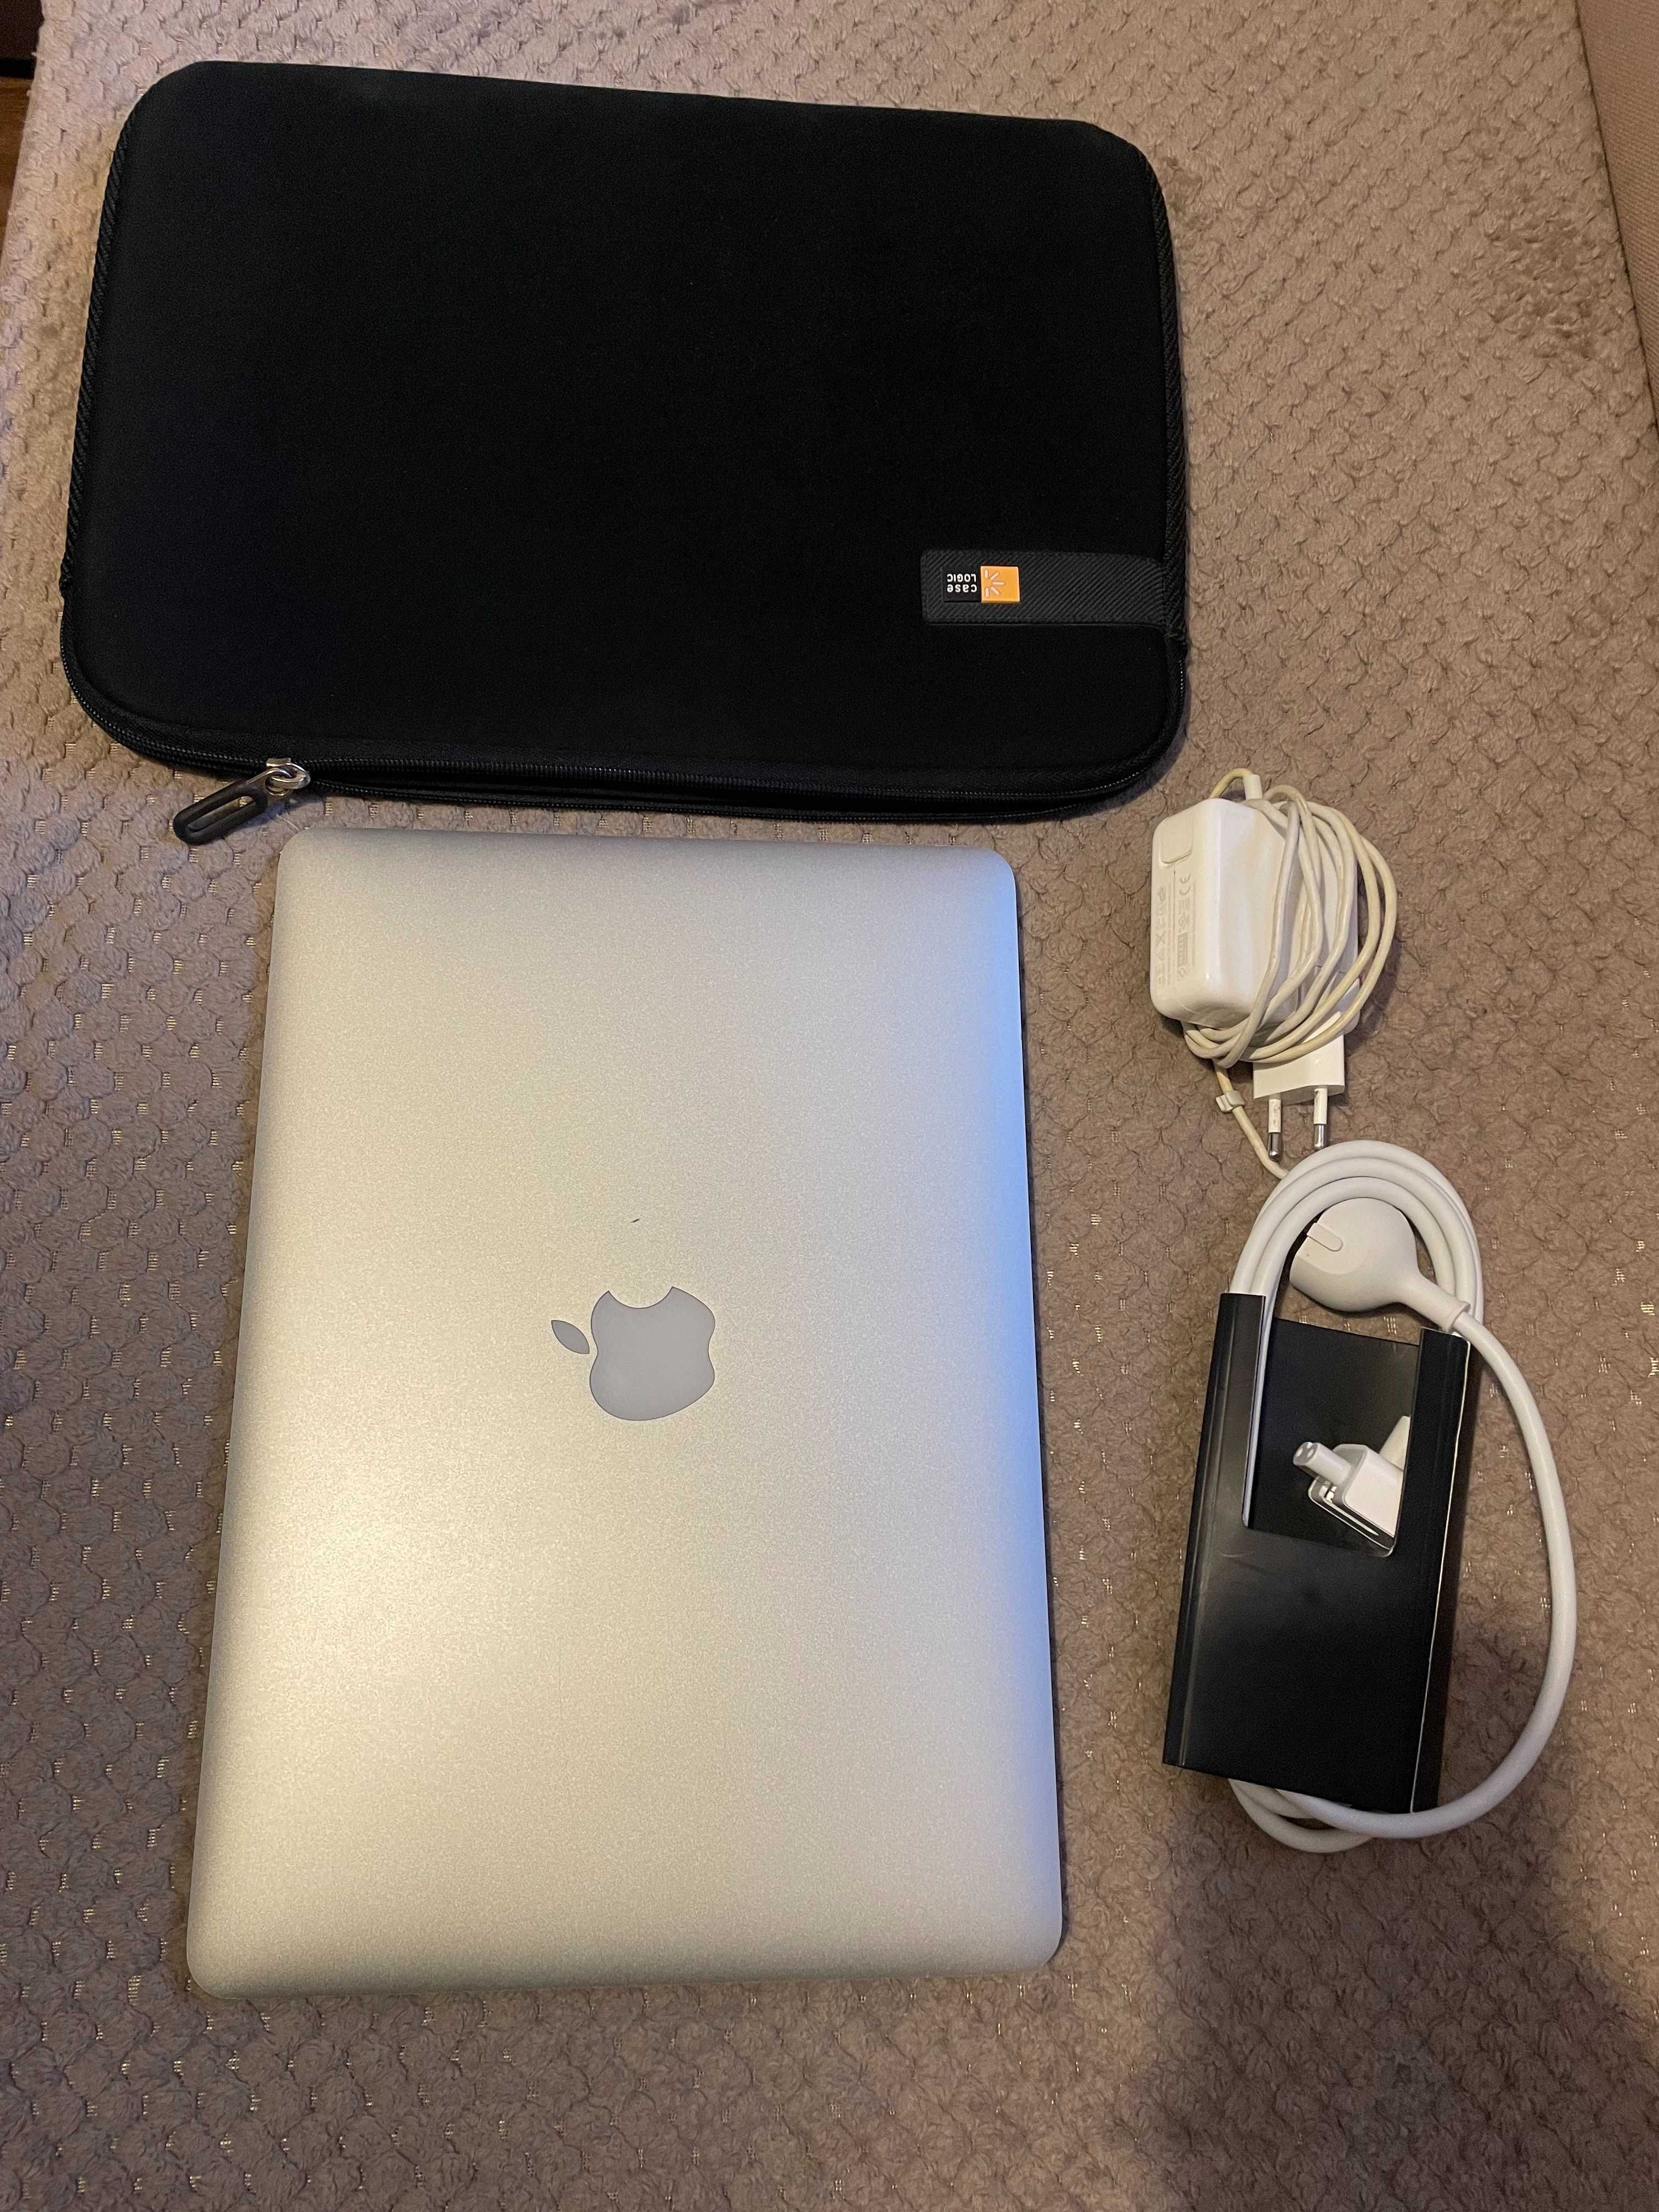 MacBook Air (13-inch, 2017) Silver; 8GB; 1,8 GHz Dual-Core